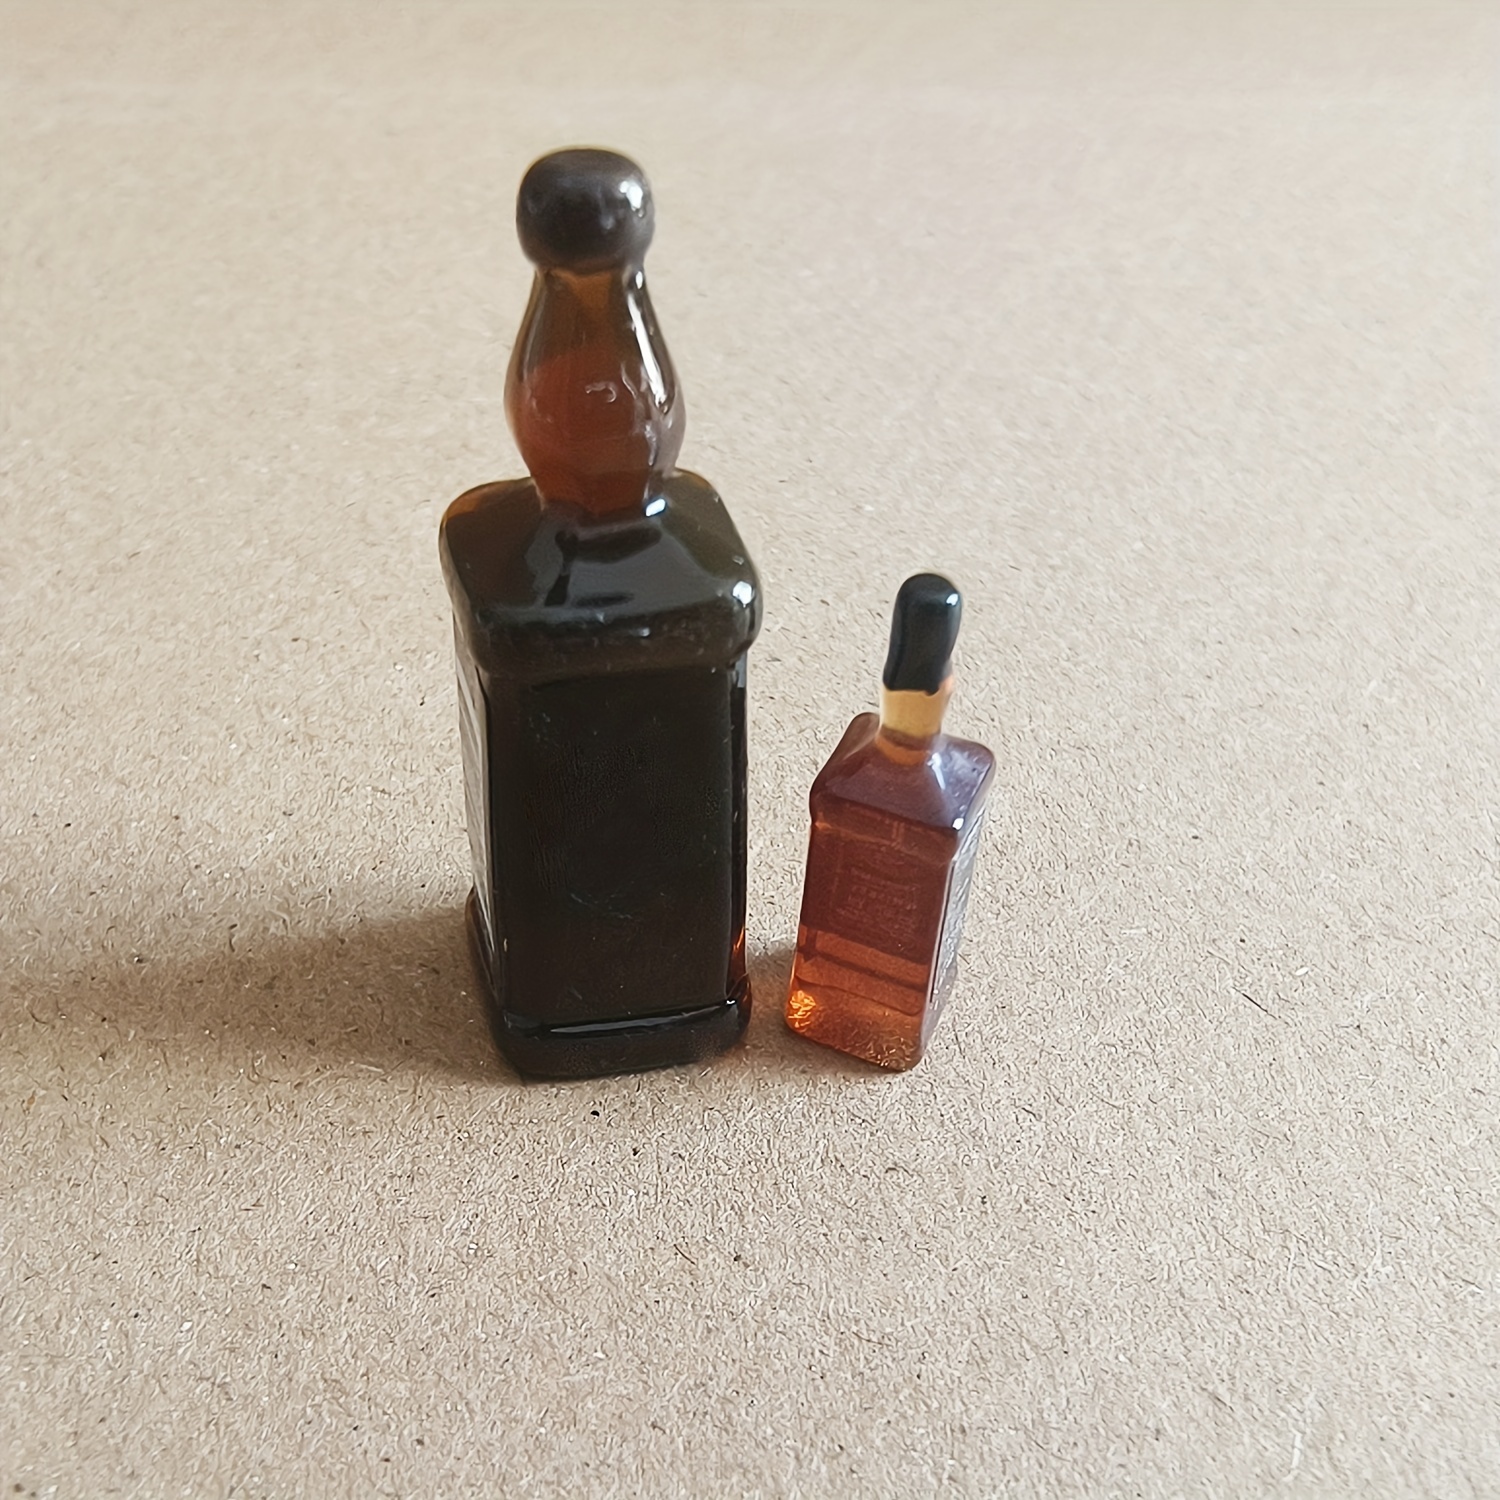 1:12 Scale Accessories Wine Cellar Miniature Bar Accessories Retro